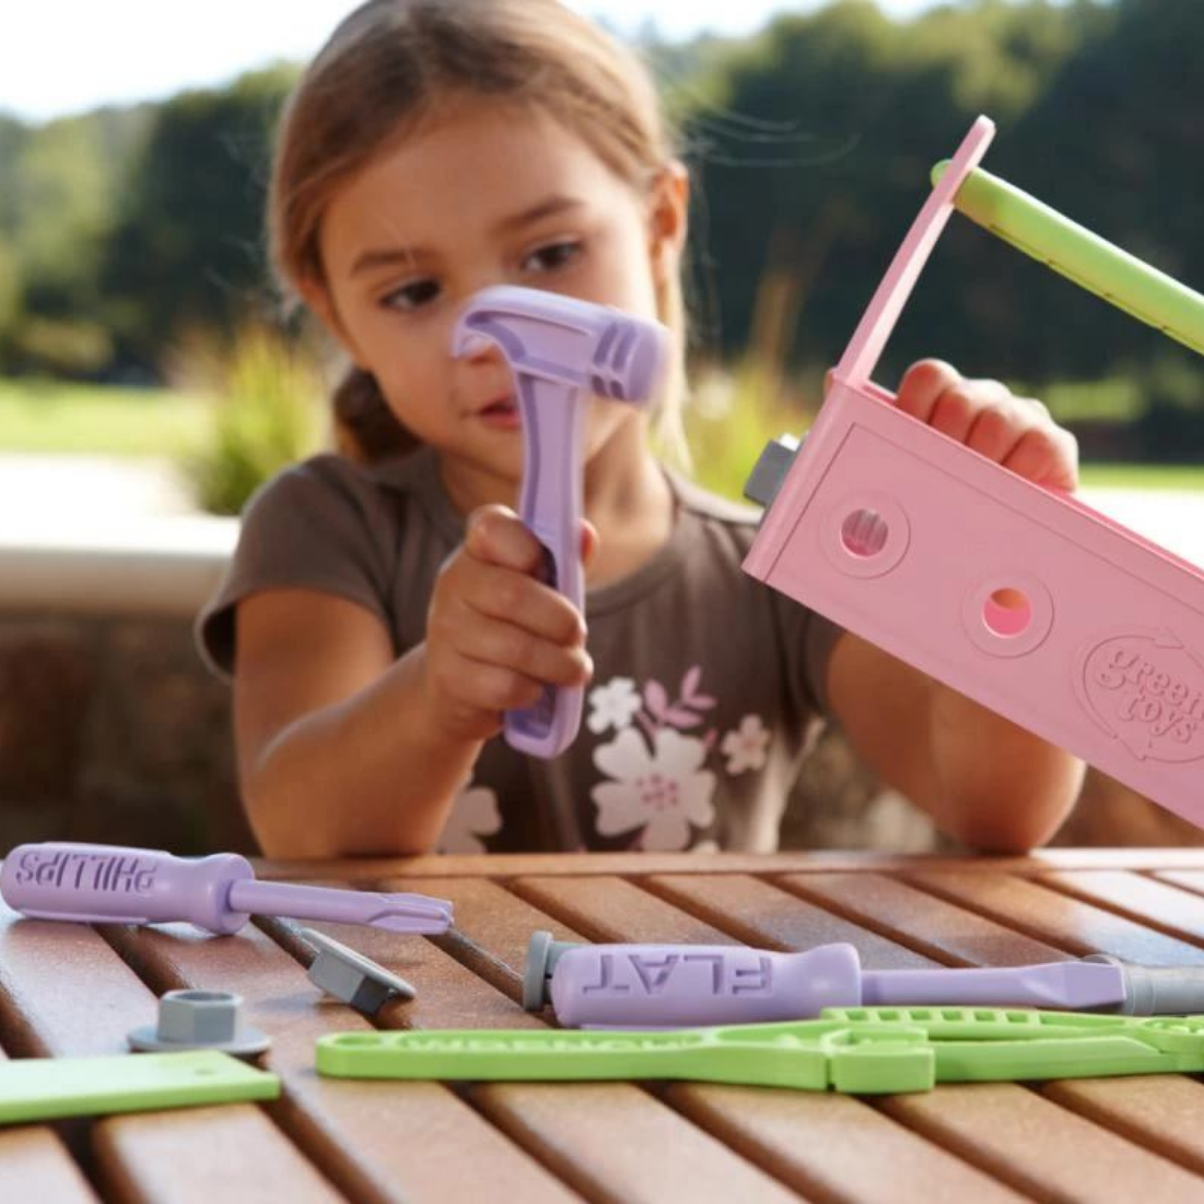 Bộ Đồ Chơi Dụng Cụ Sửa Chữa Green Toys Cho Bé Từ 2 Tuổi – Hồng